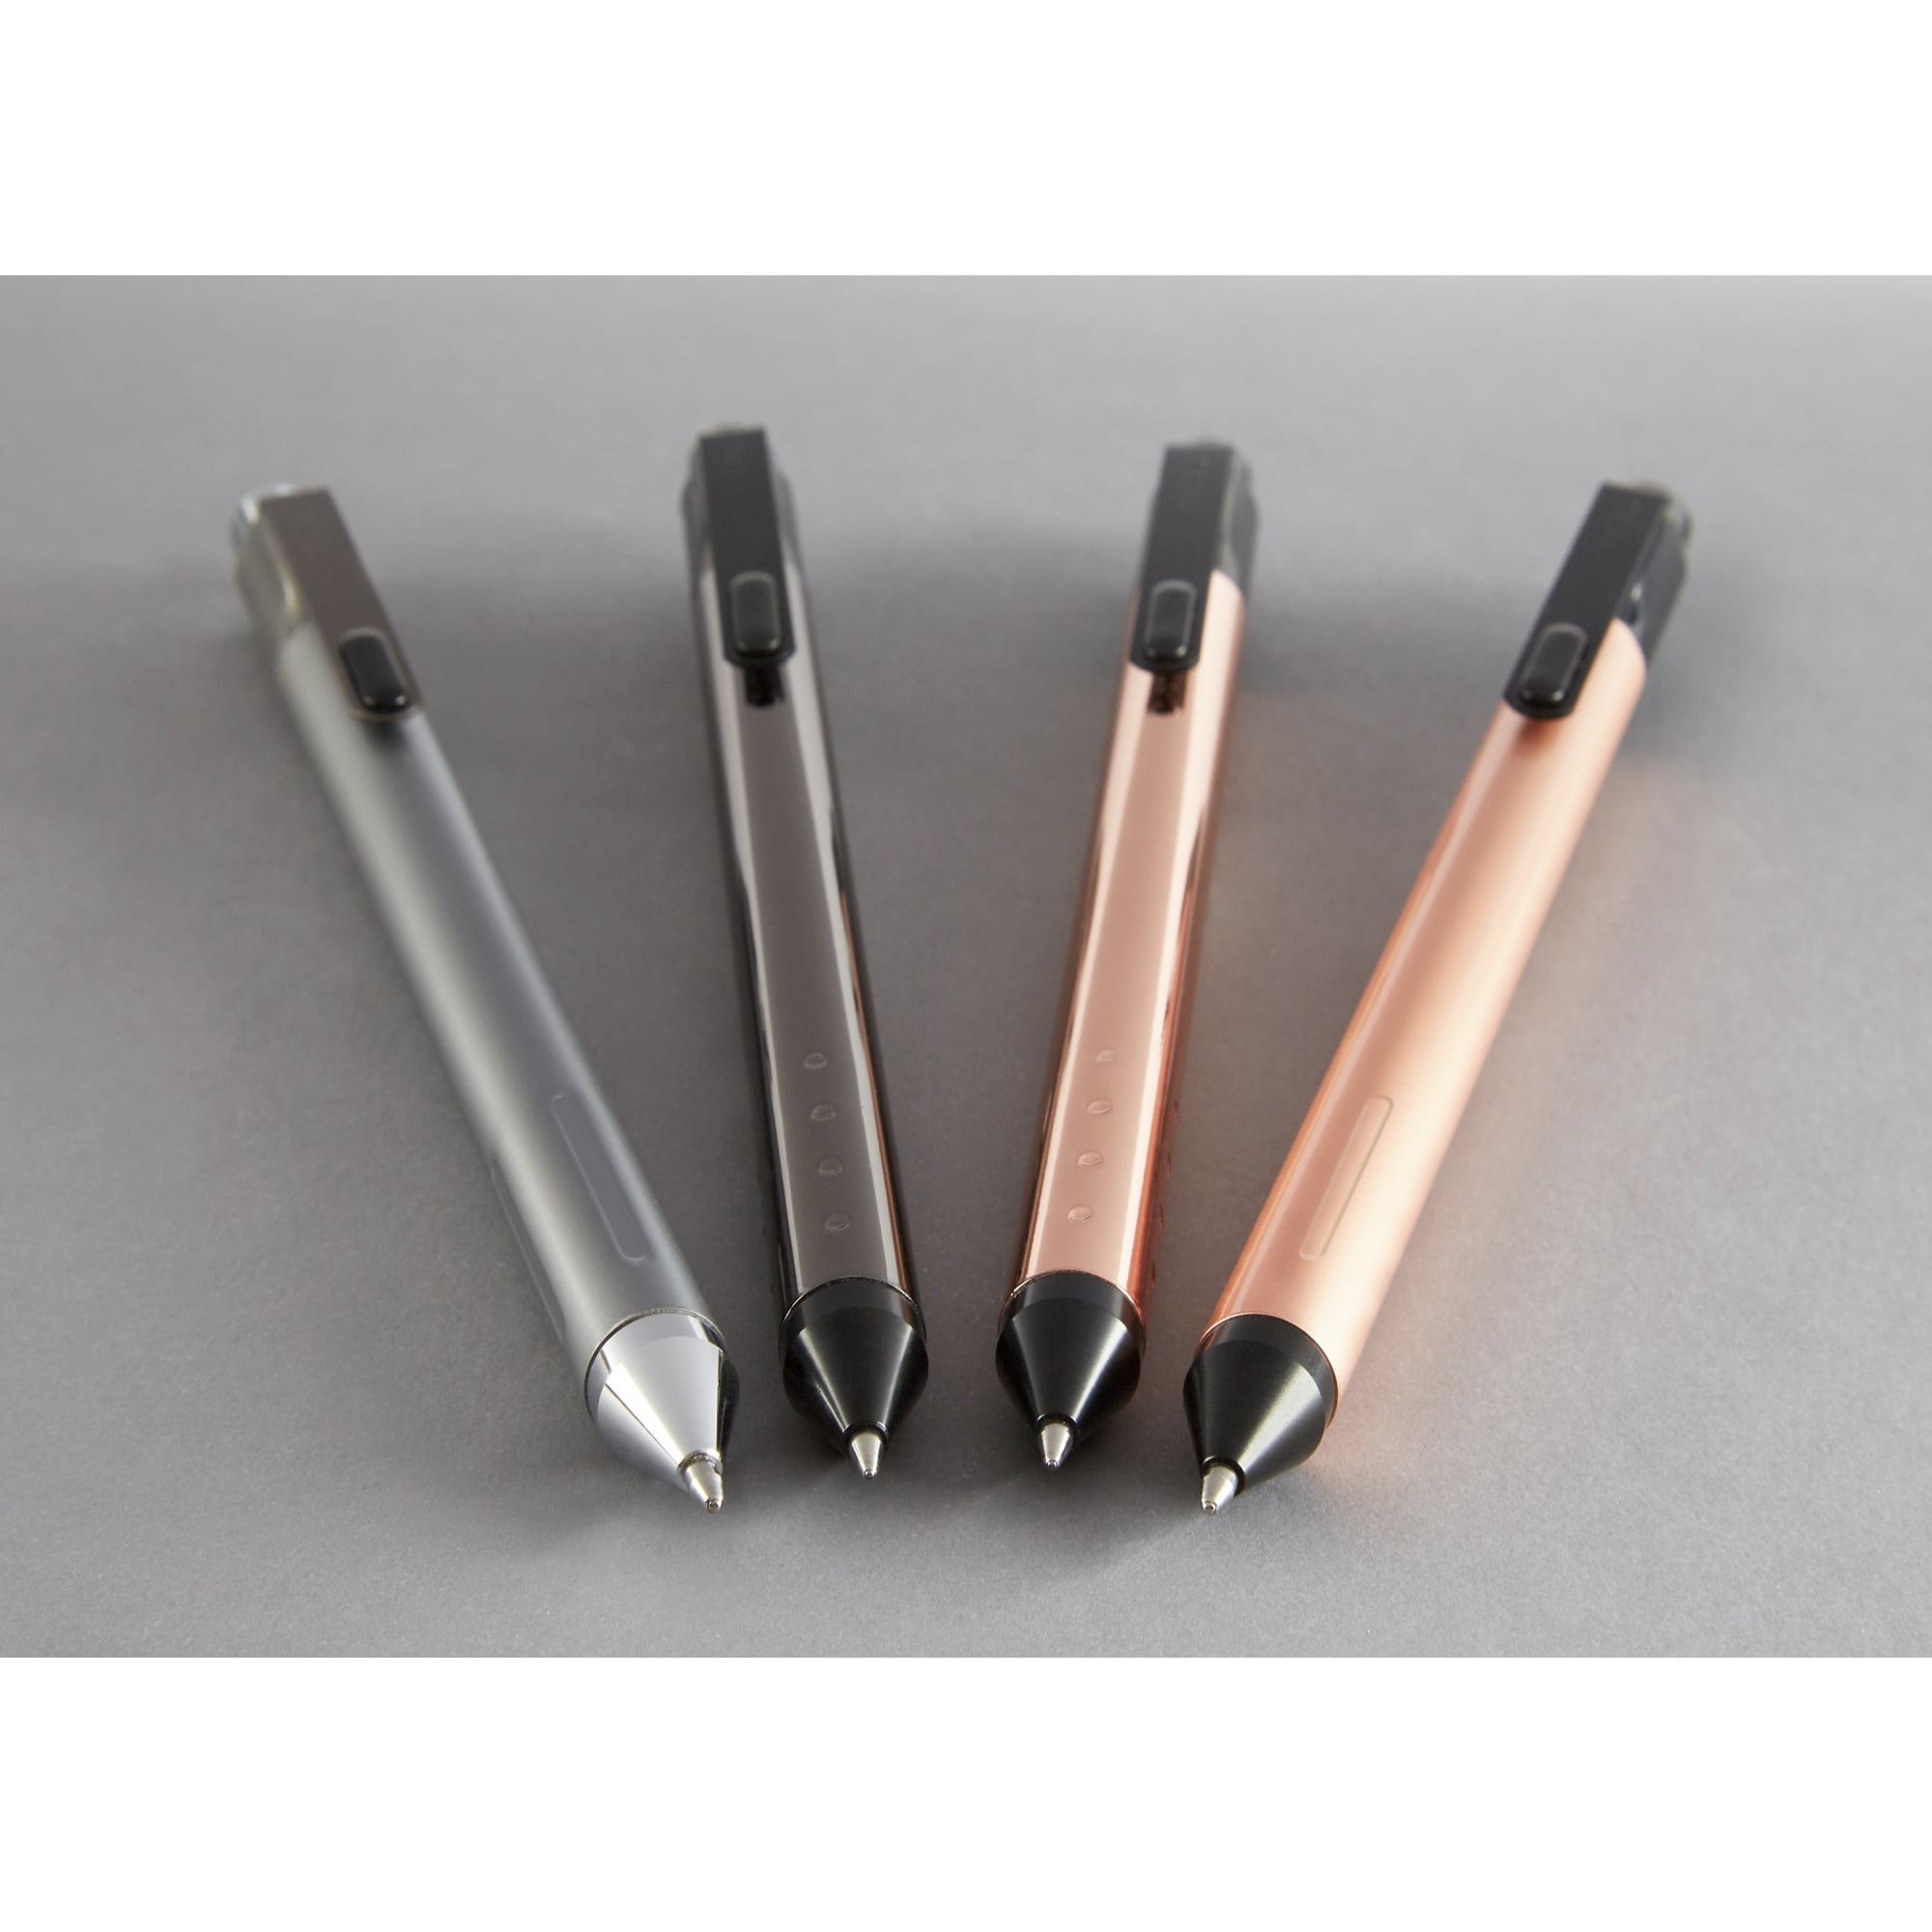 TUL Retractable Pen Gel Ink Black Rose Gold Limited Edition Med 0.7 GL Pink 